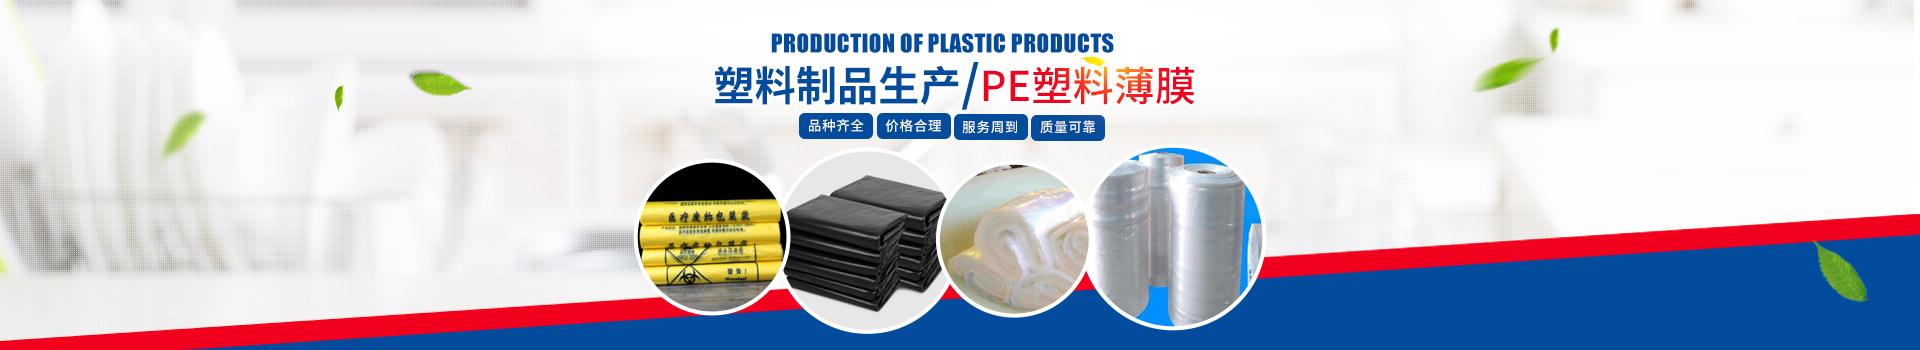 长沙市华大塑料制品有限公司